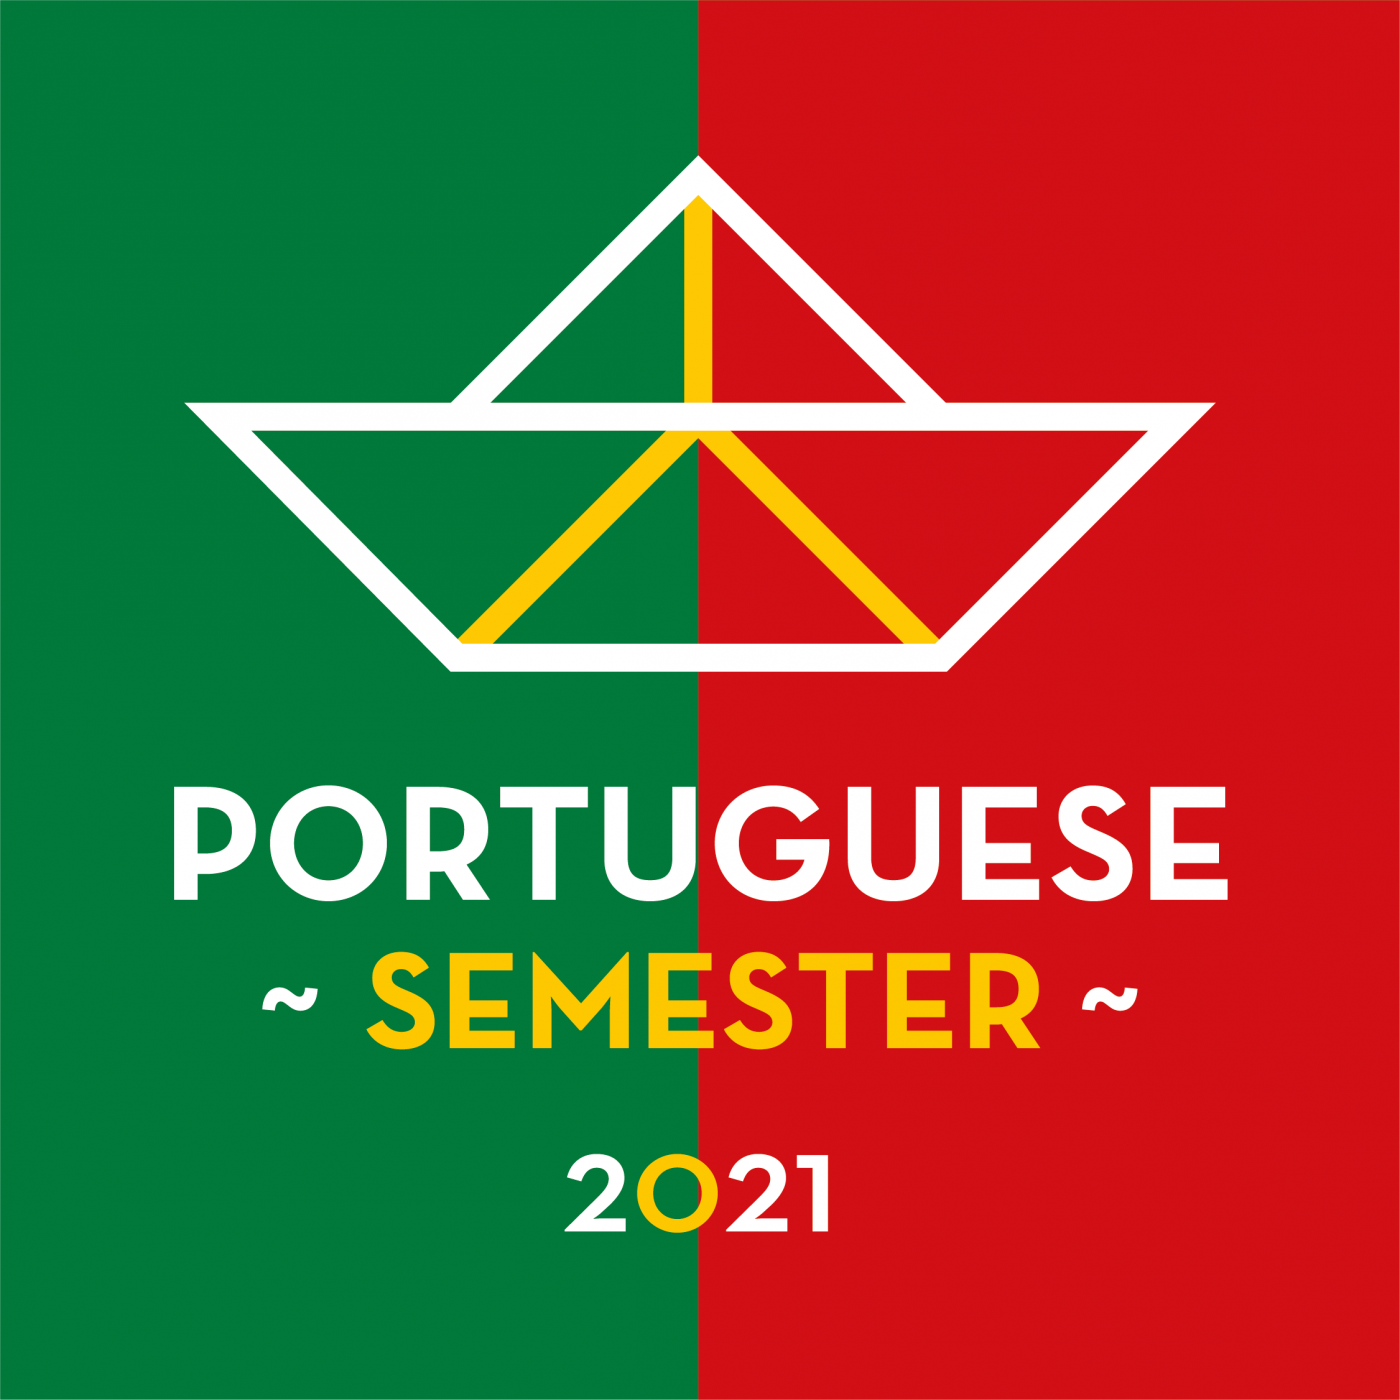 PT Semester logo